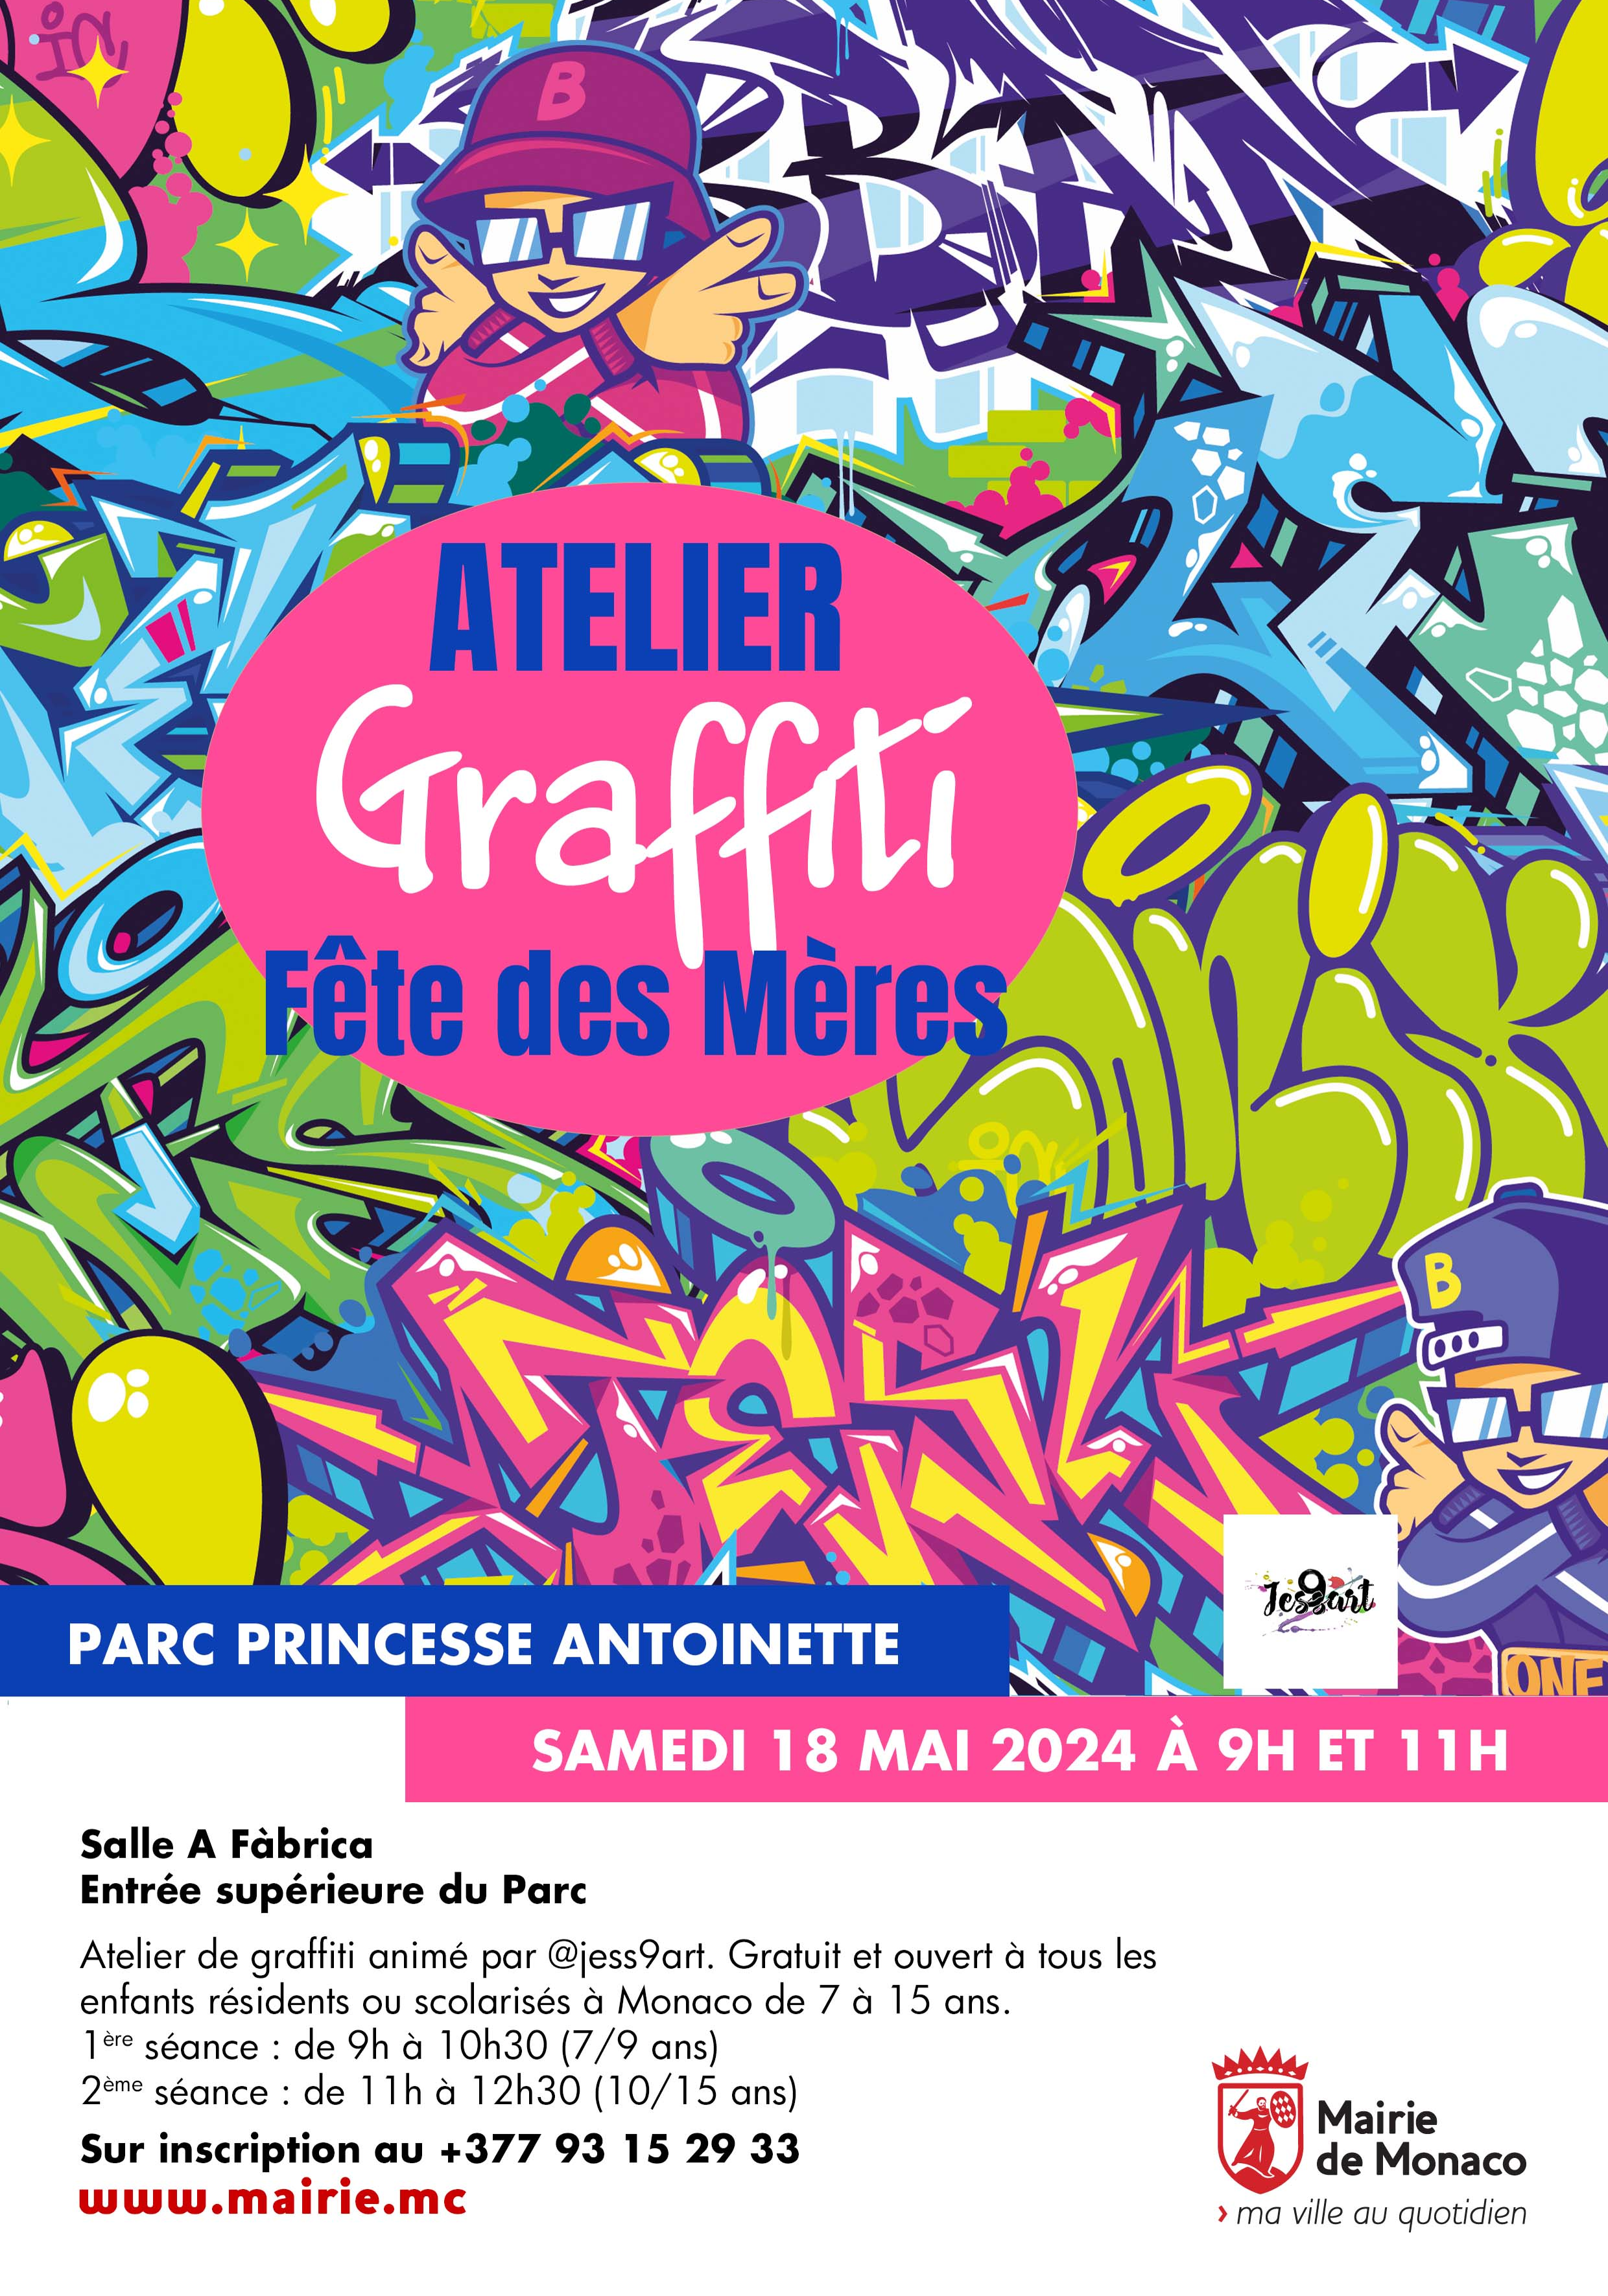 Affiche de l'événement Atelier graffiti